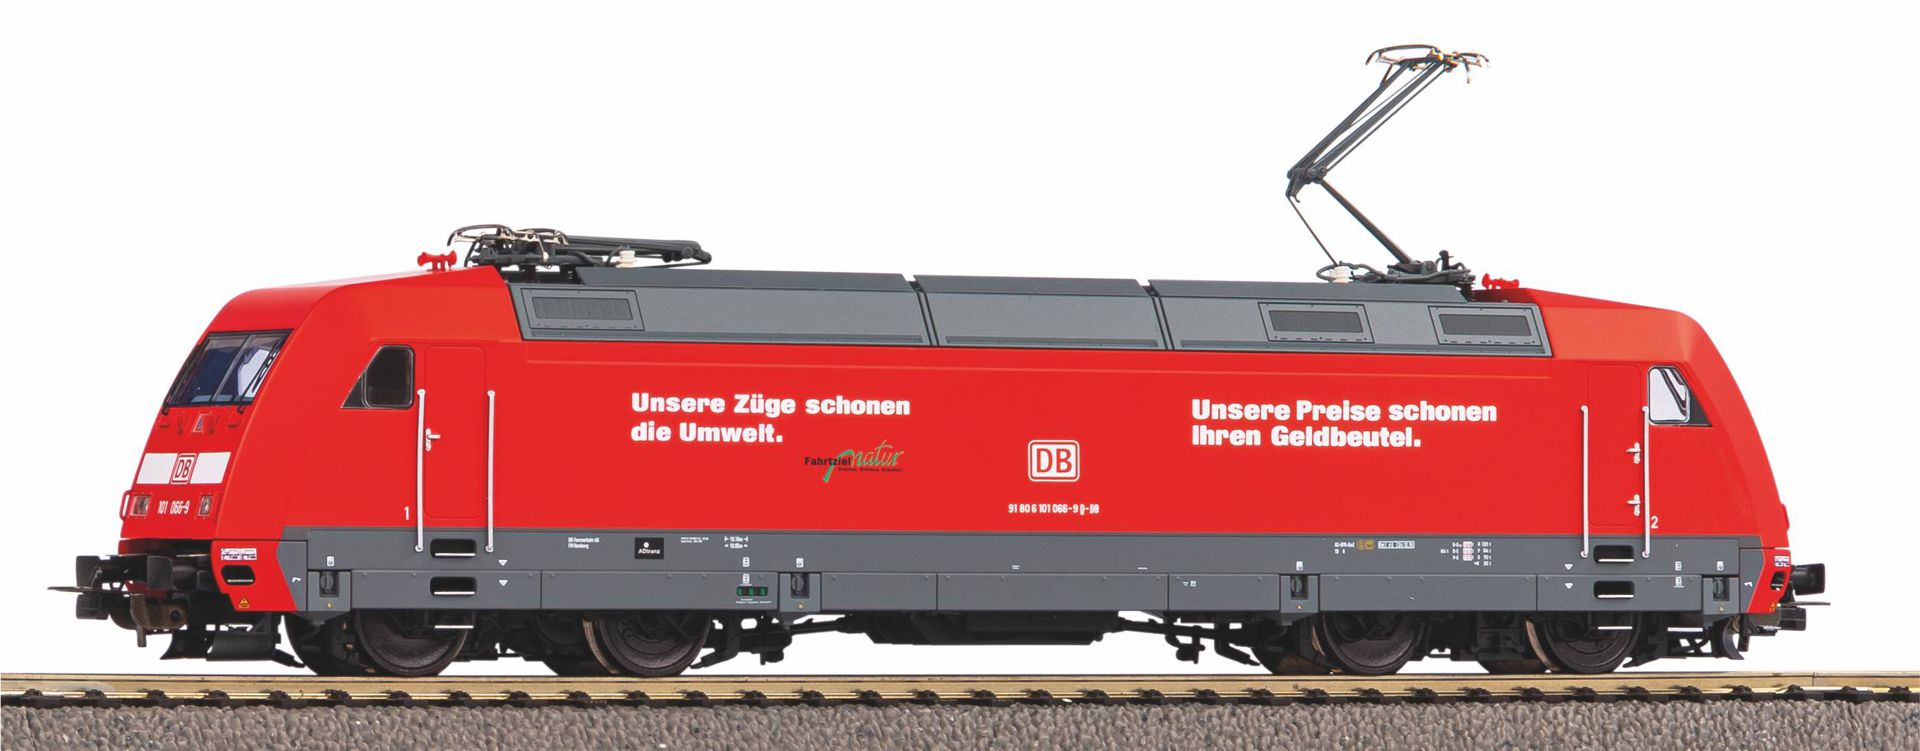 Piko 51107 - E-Lok BR 101 'Unsere Preise', DBAG, Ep.VI